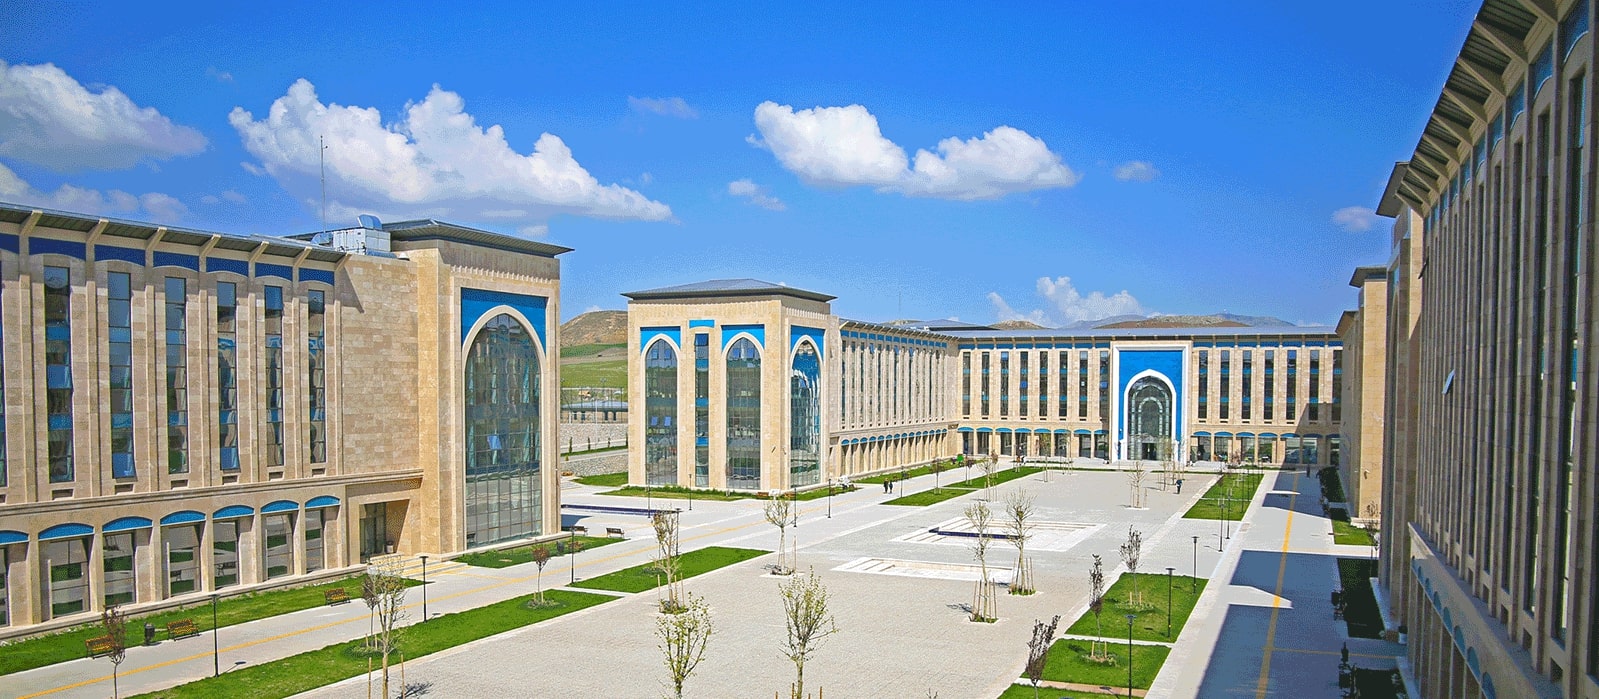 جامعة يلدرم بايازيت